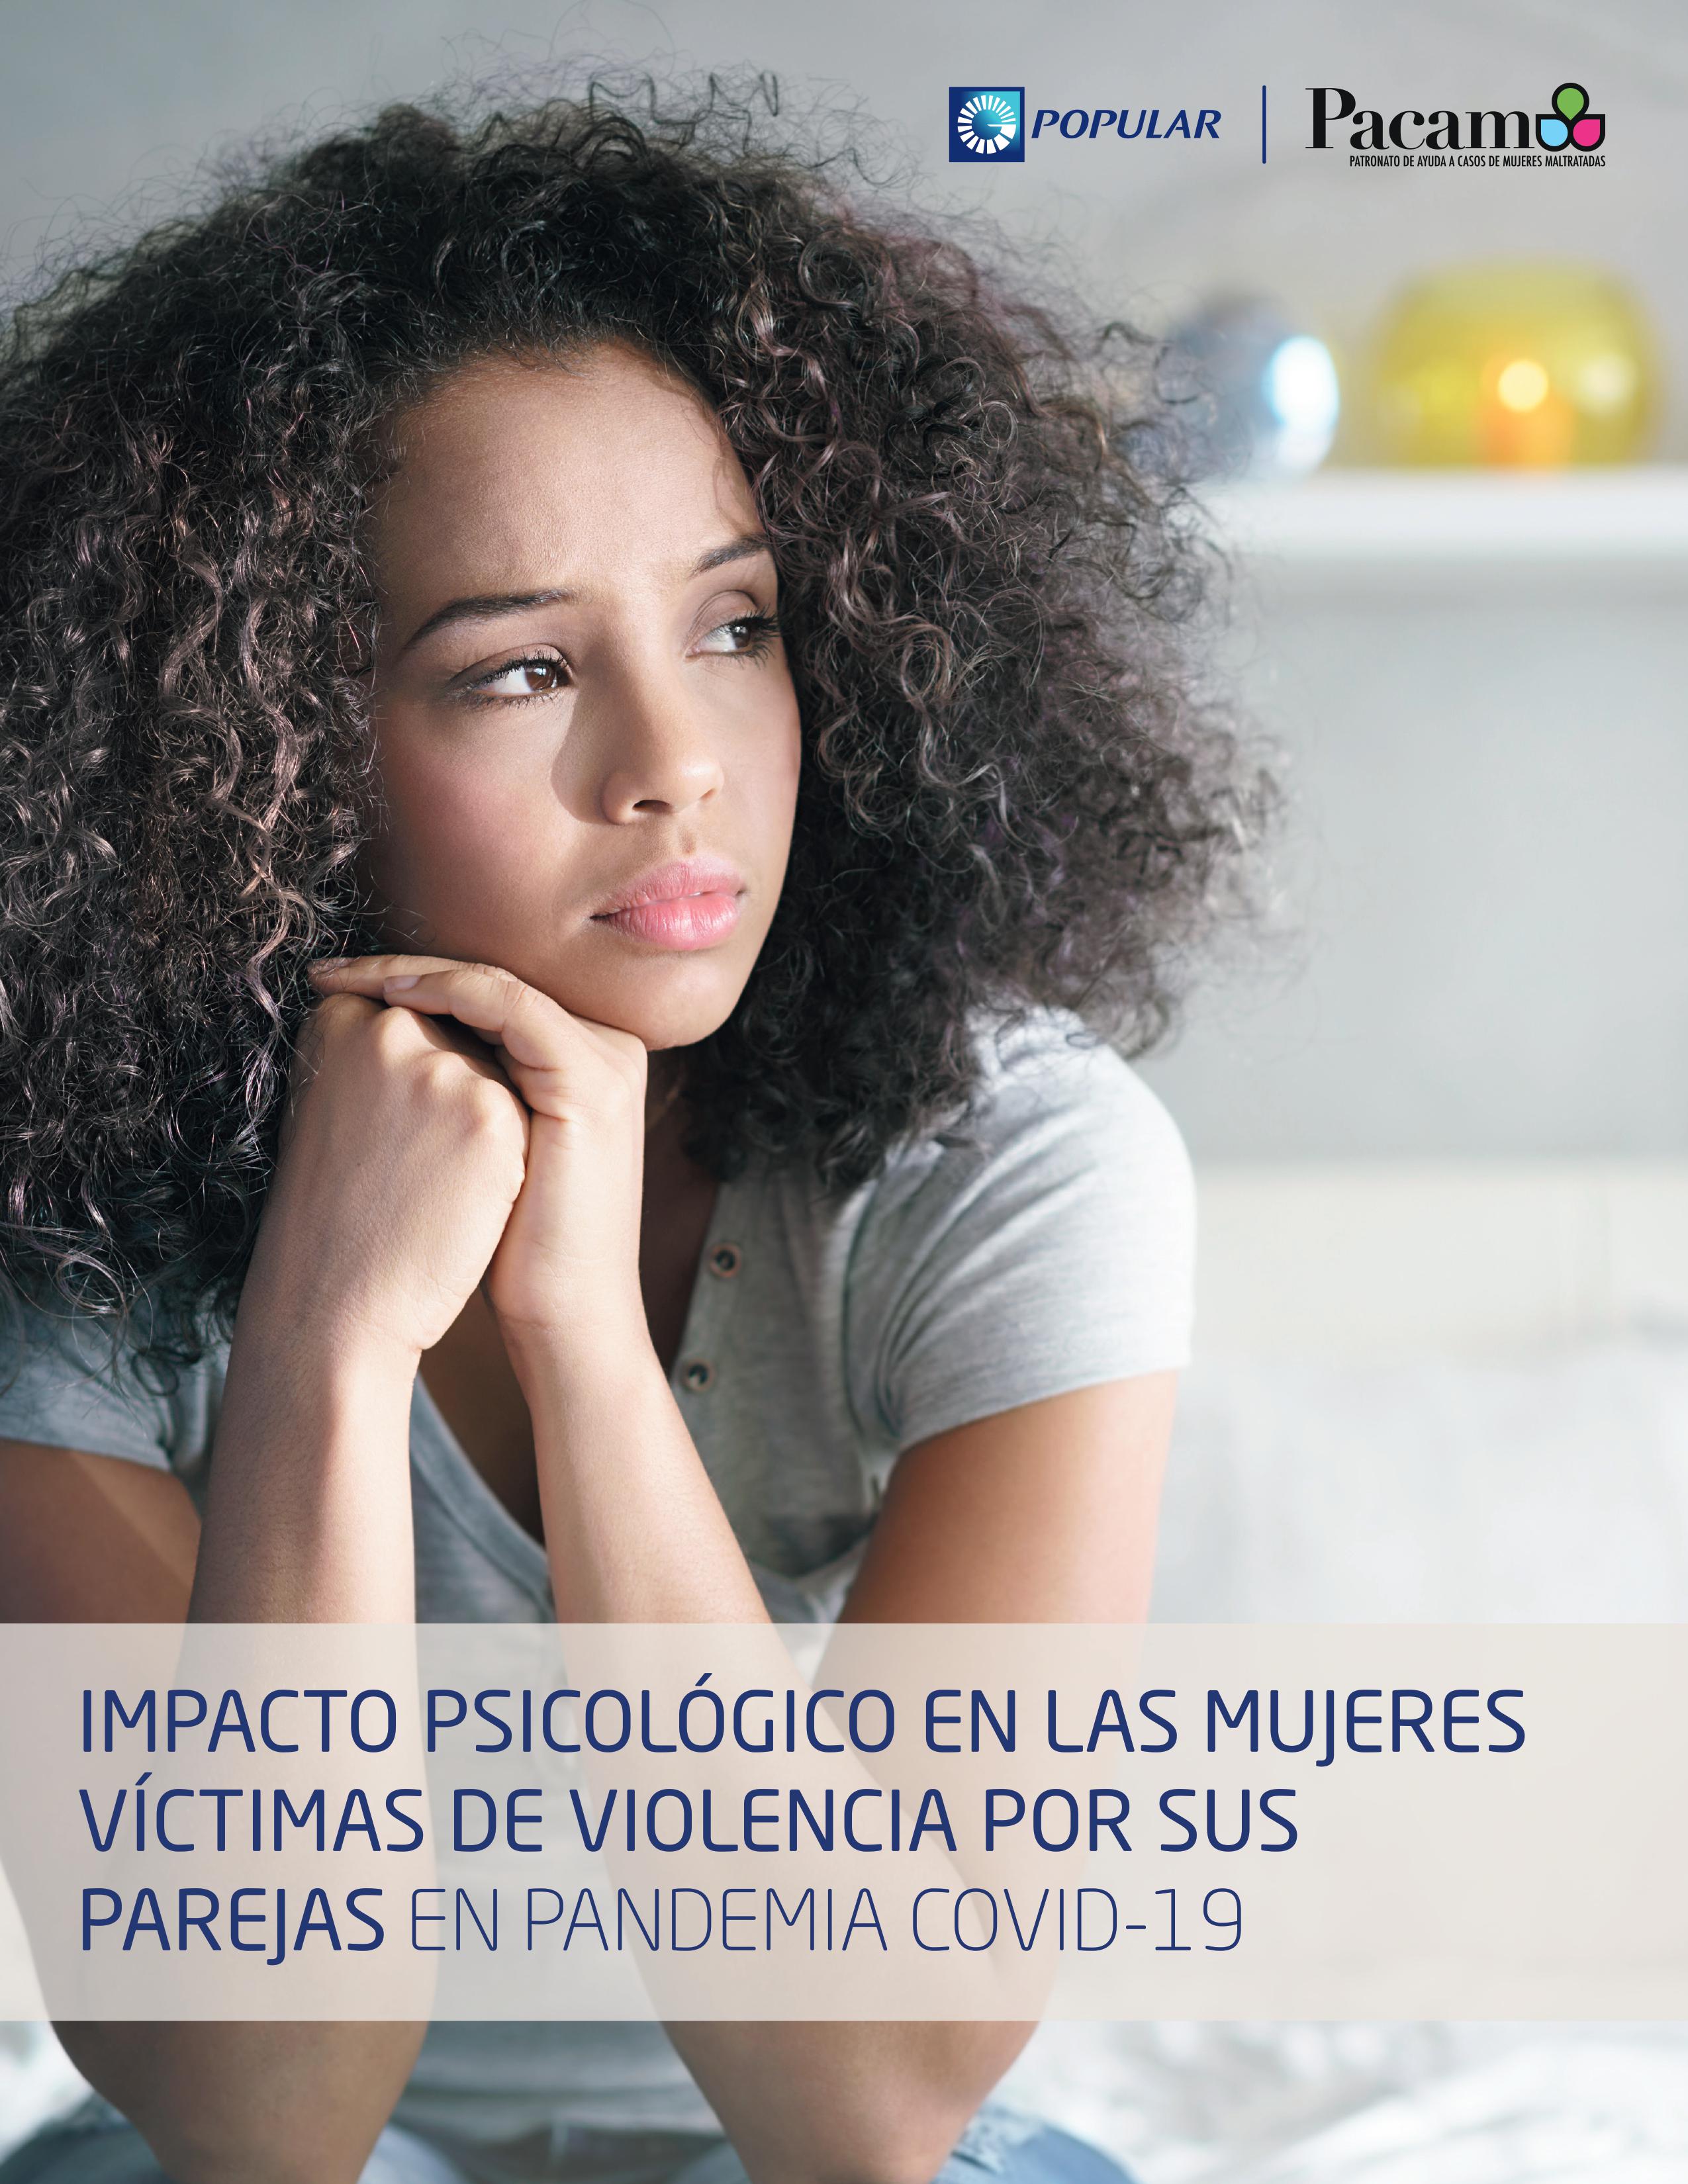 Popular y PACAM presentan estudio sobre violencia contra la mujer durante COVID-19